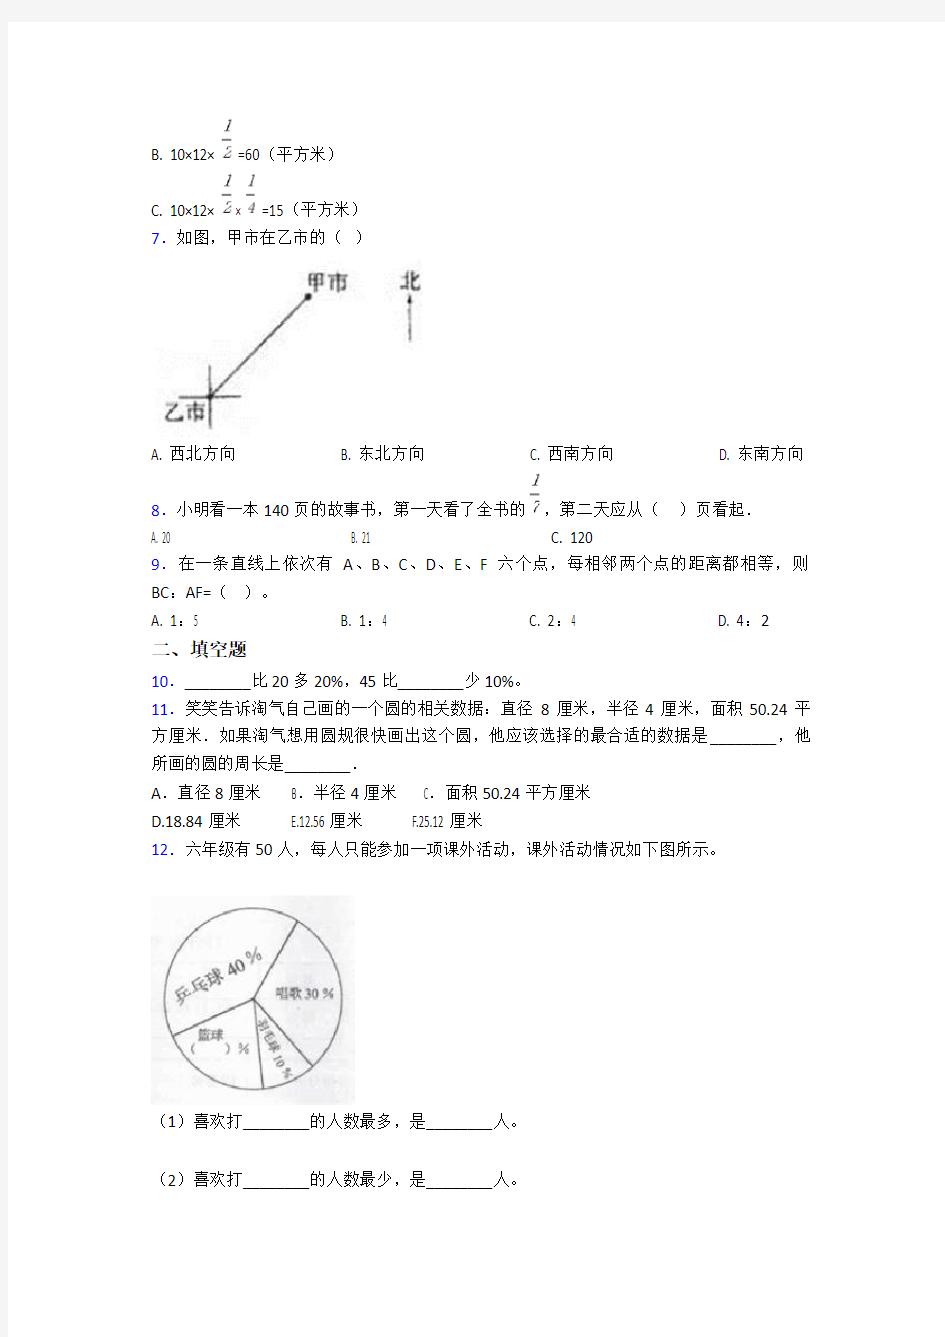 2020-2021广州市小学六年级数学上期末试题(及答案)